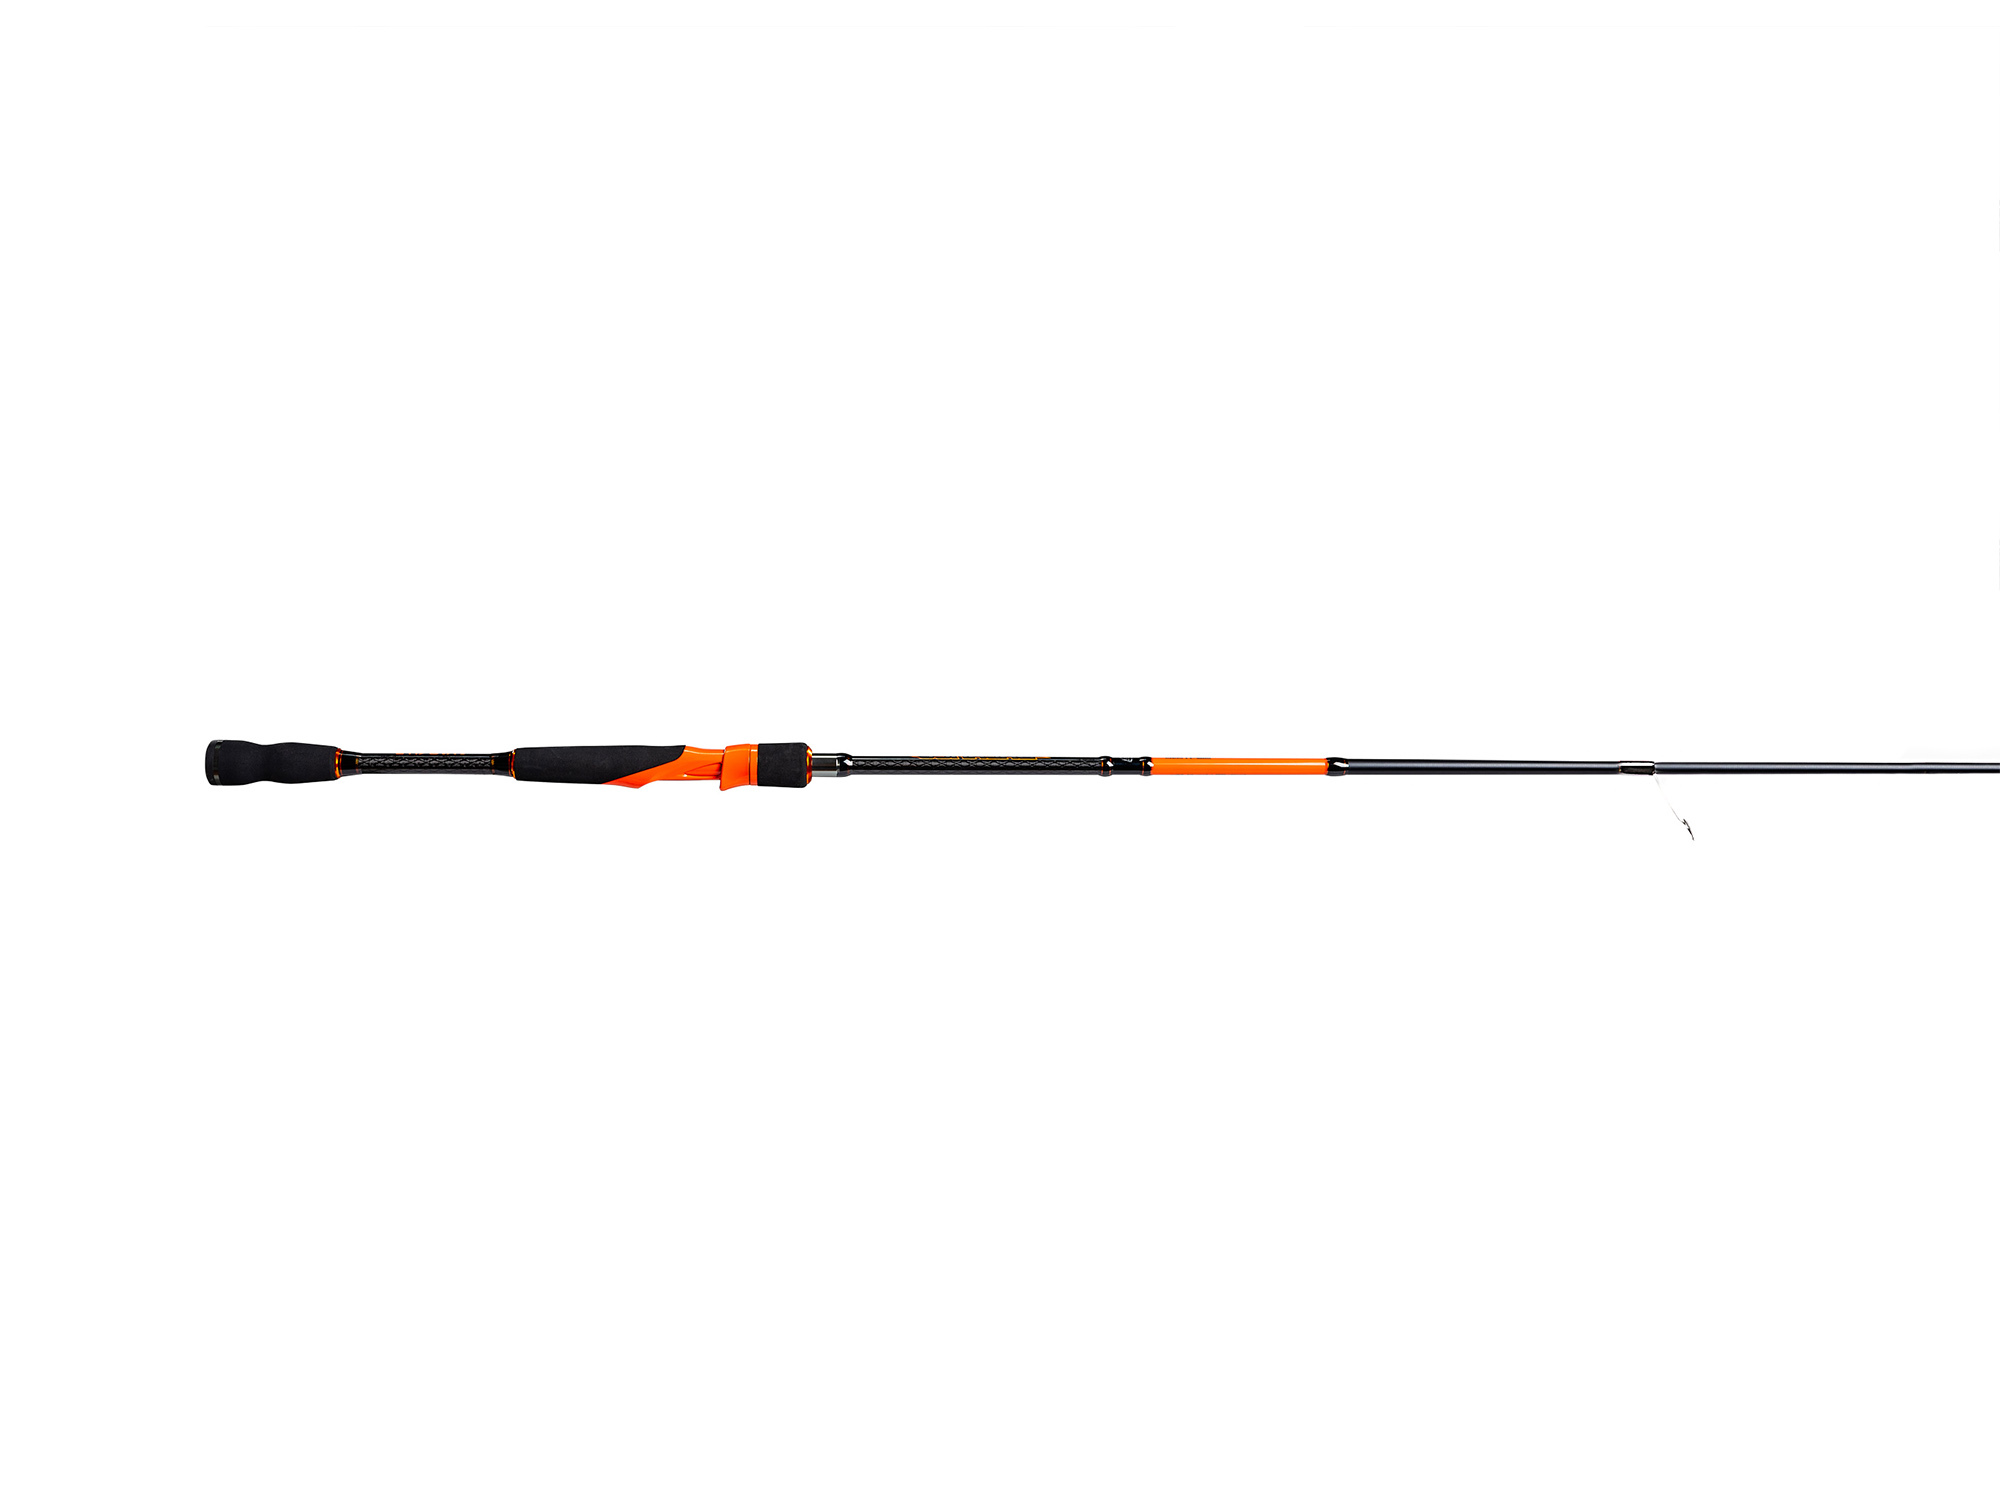 Shredder Ultralight Inshore Fishing Rod 7’0”